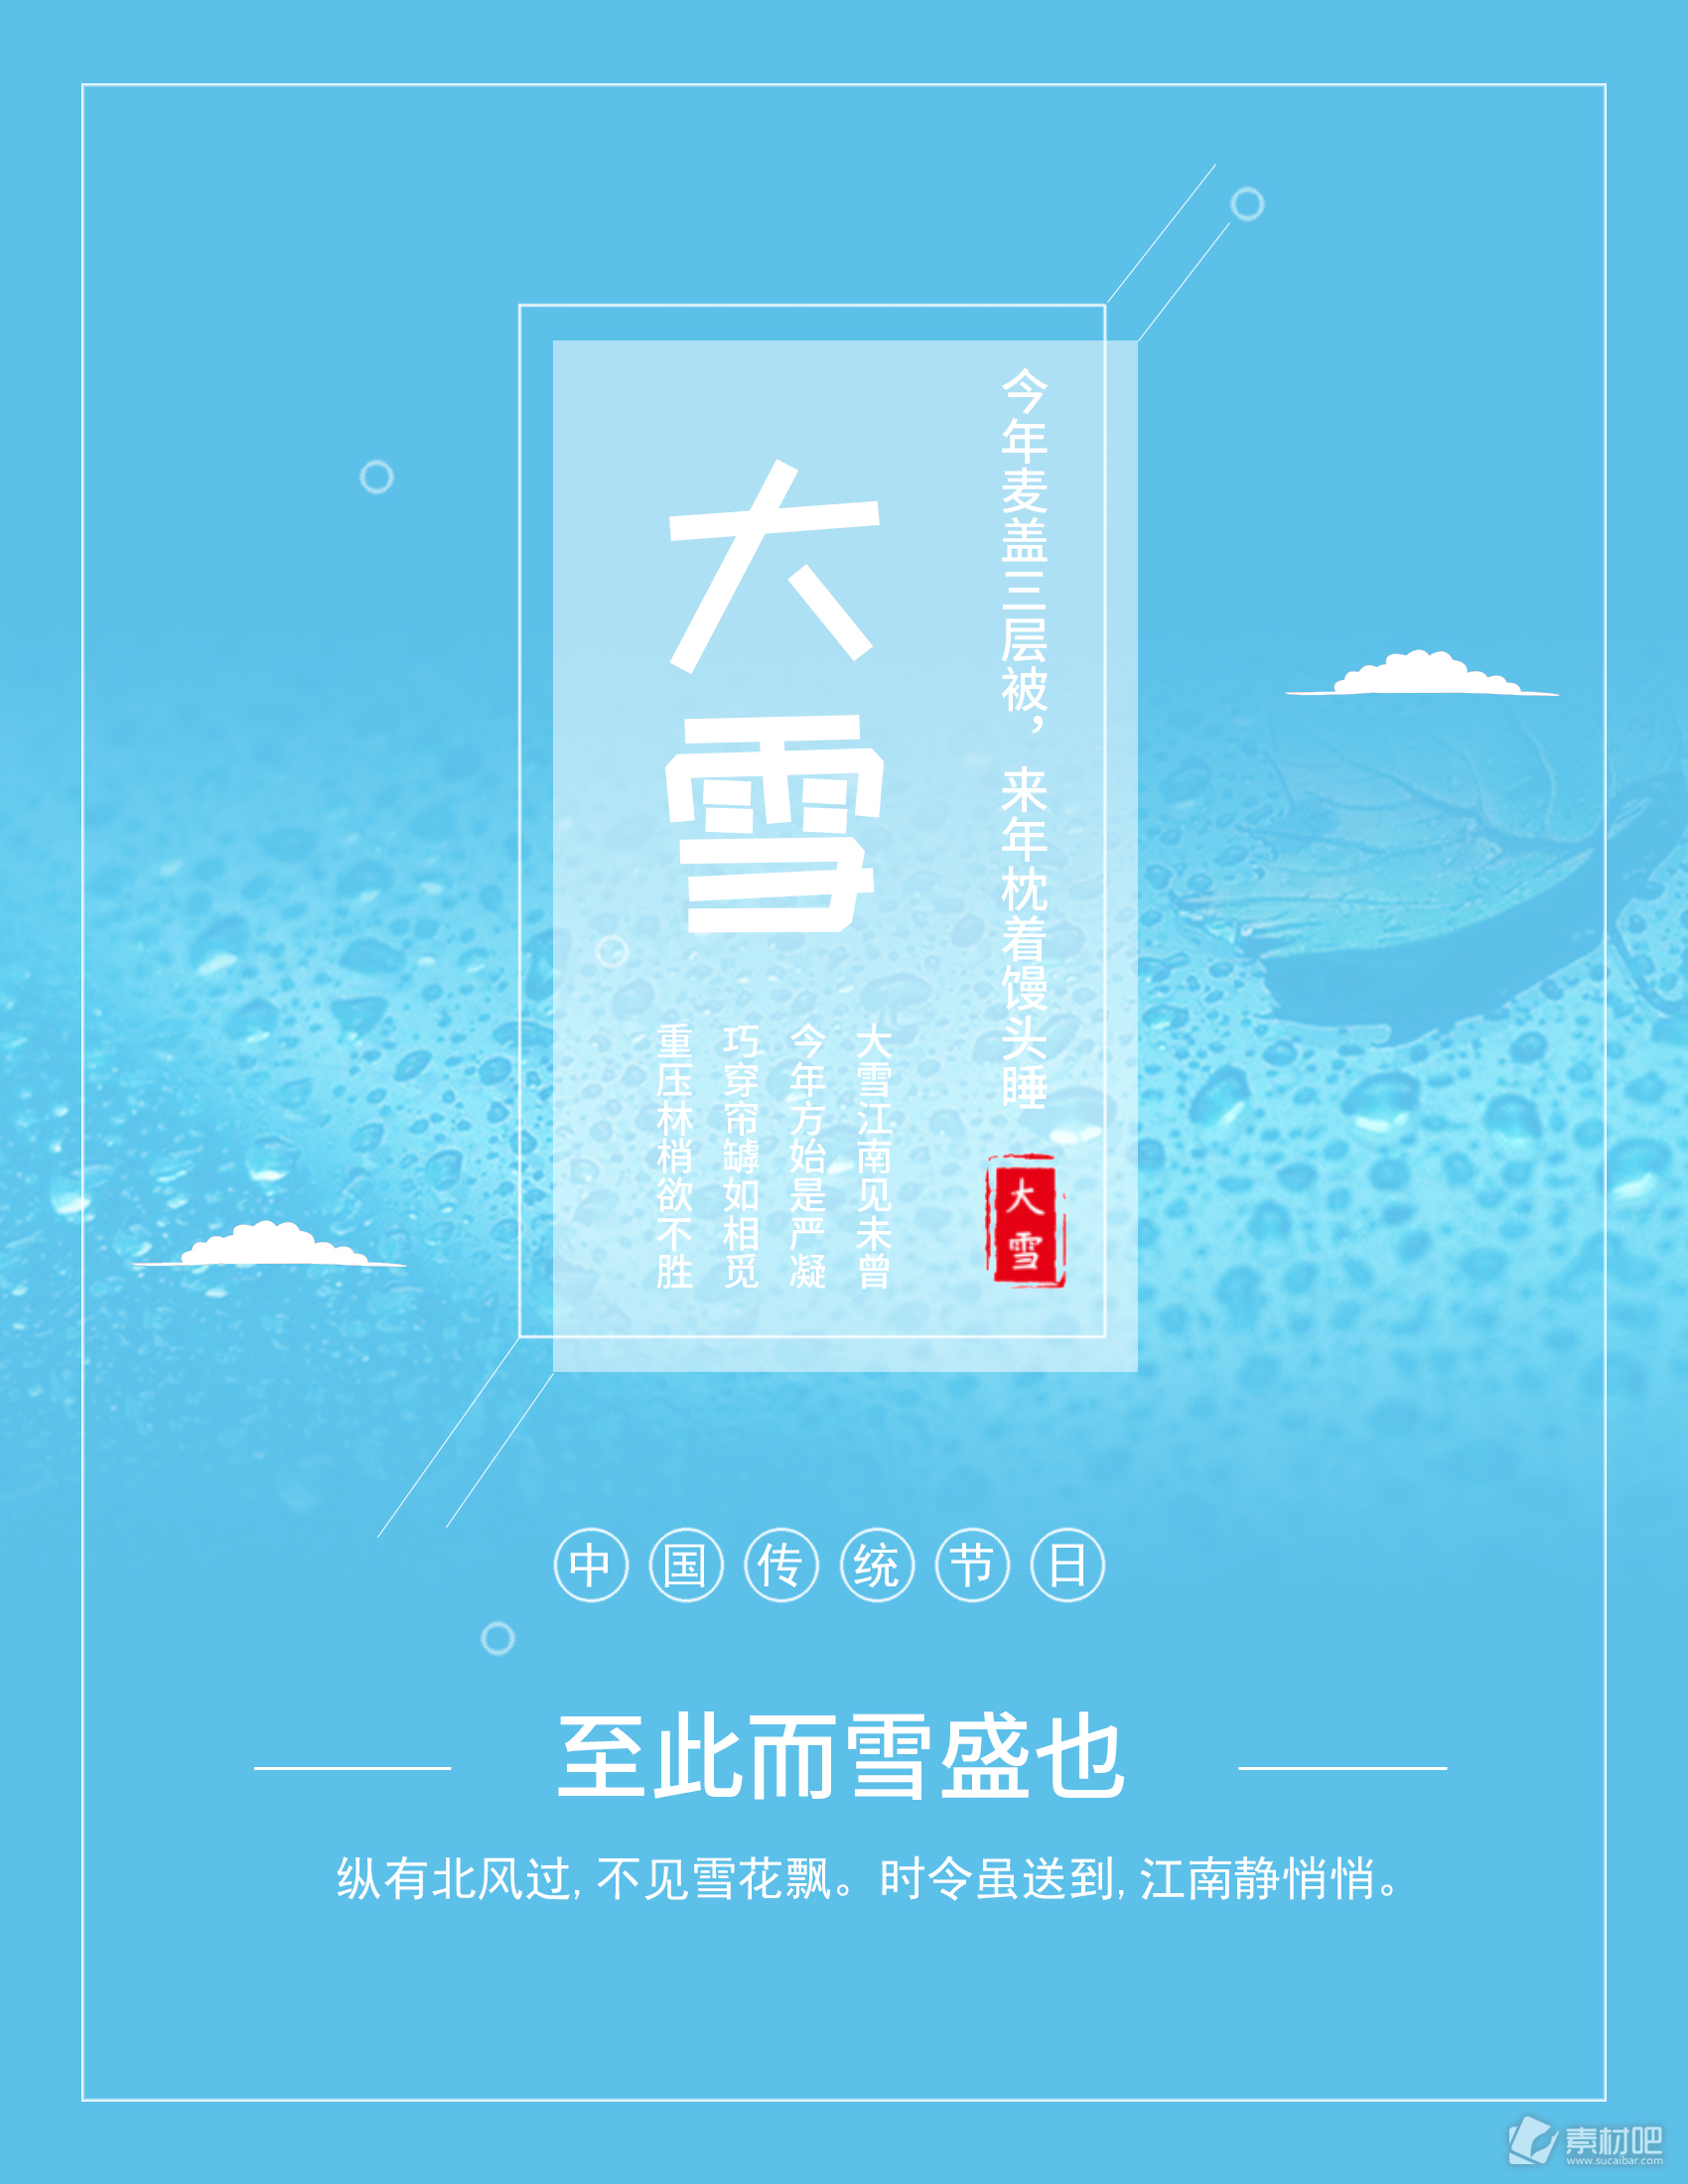 中国传统节日大雪二十四节气海报